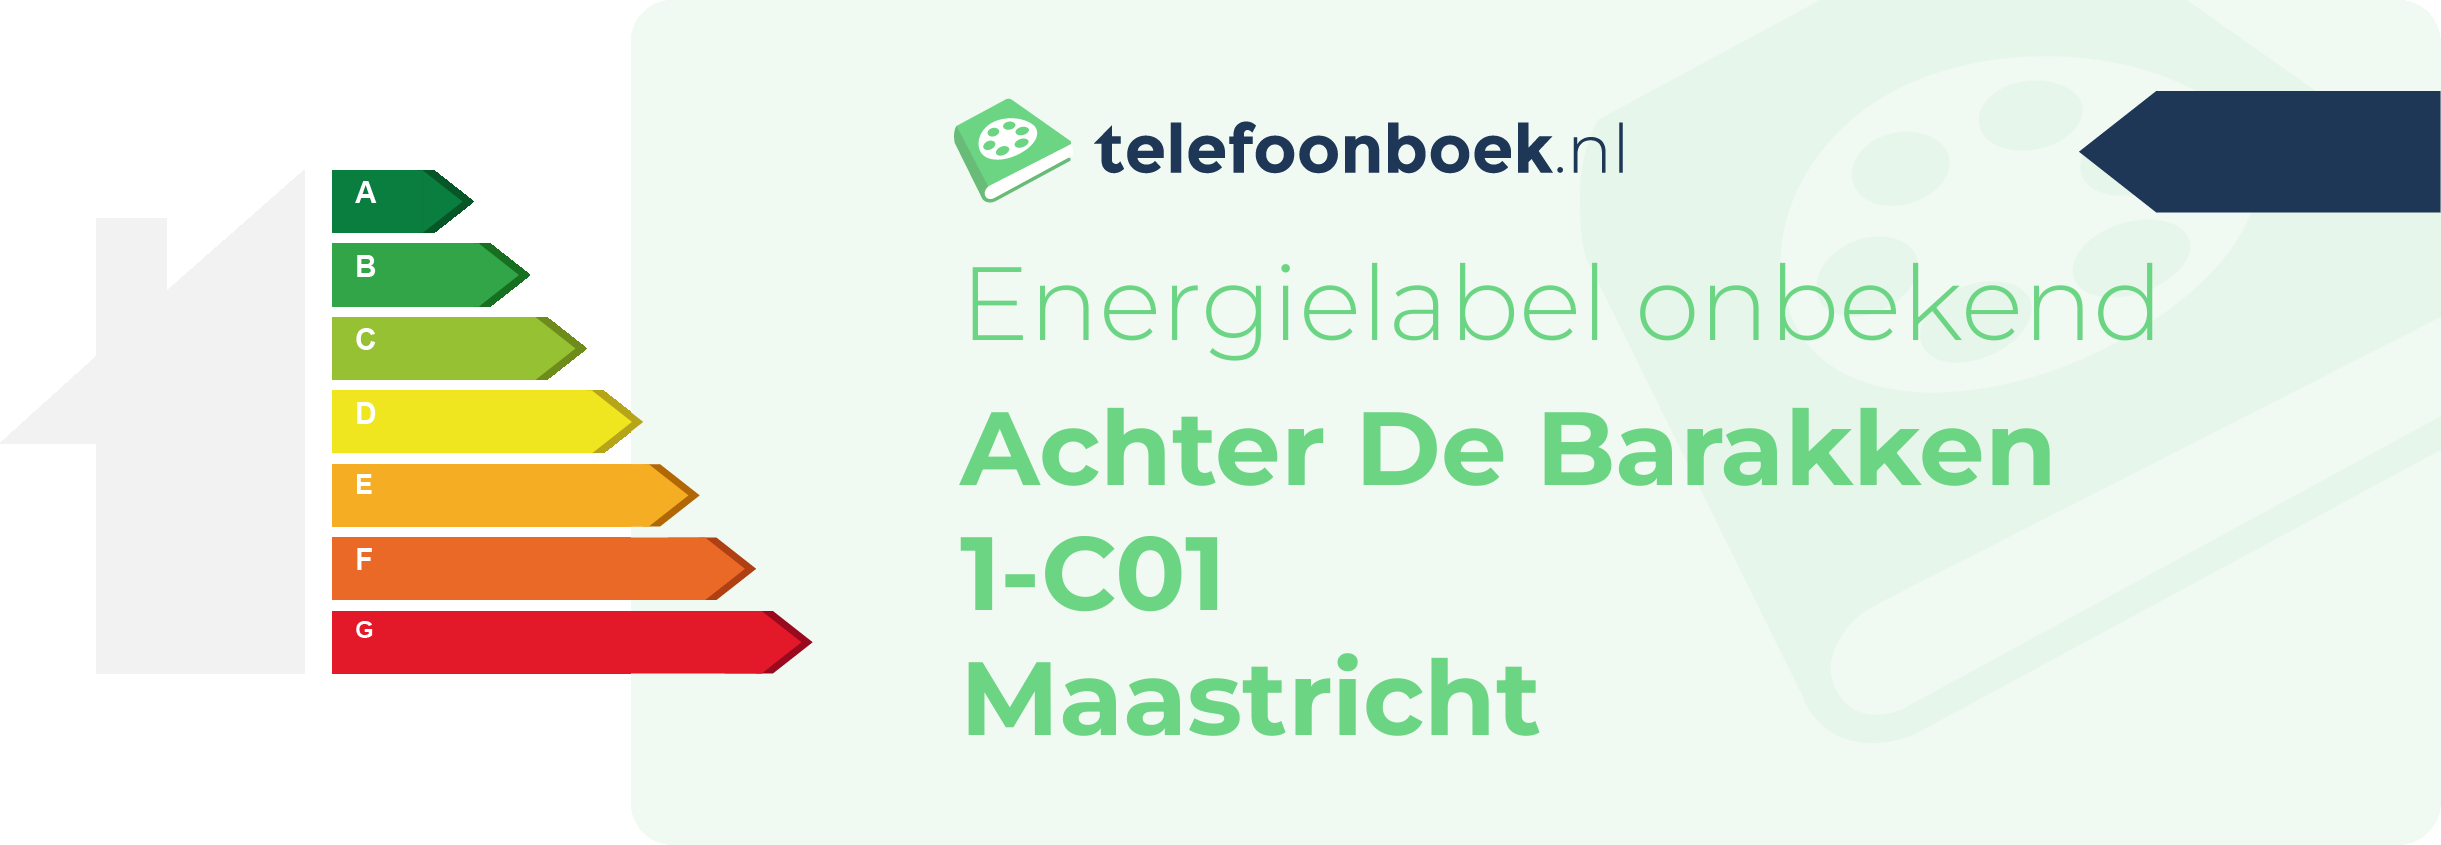 Energielabel Achter De Barakken 1-C01 Maastricht